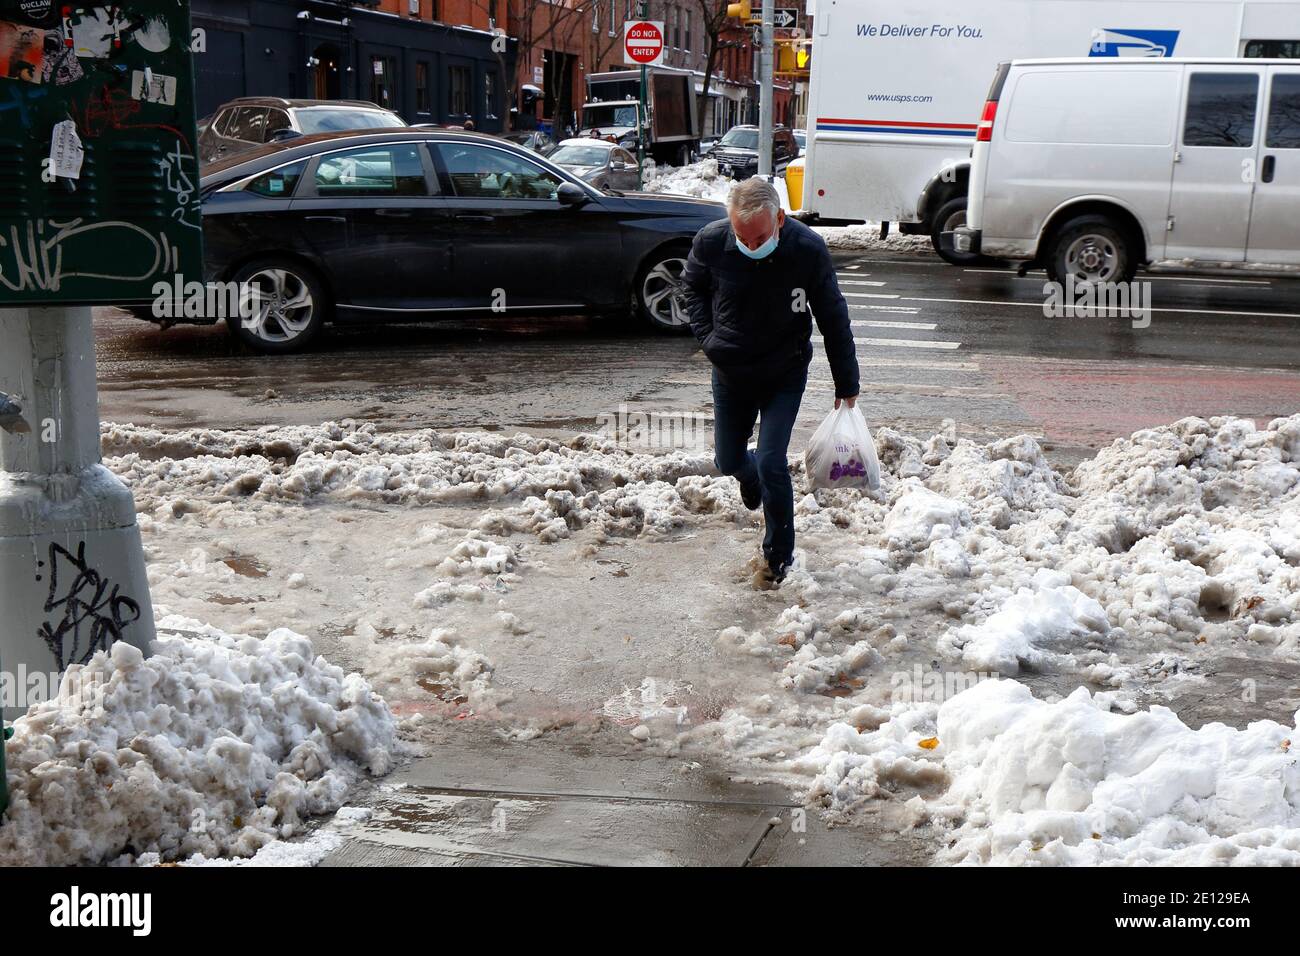 Eine Person stolpert in knöcheltiefen schmutzigen Slush Wasser bei einem Überquerung durch schmelzenden Schnee und verstopfte Abwasserkanäle in New York City Stockfoto